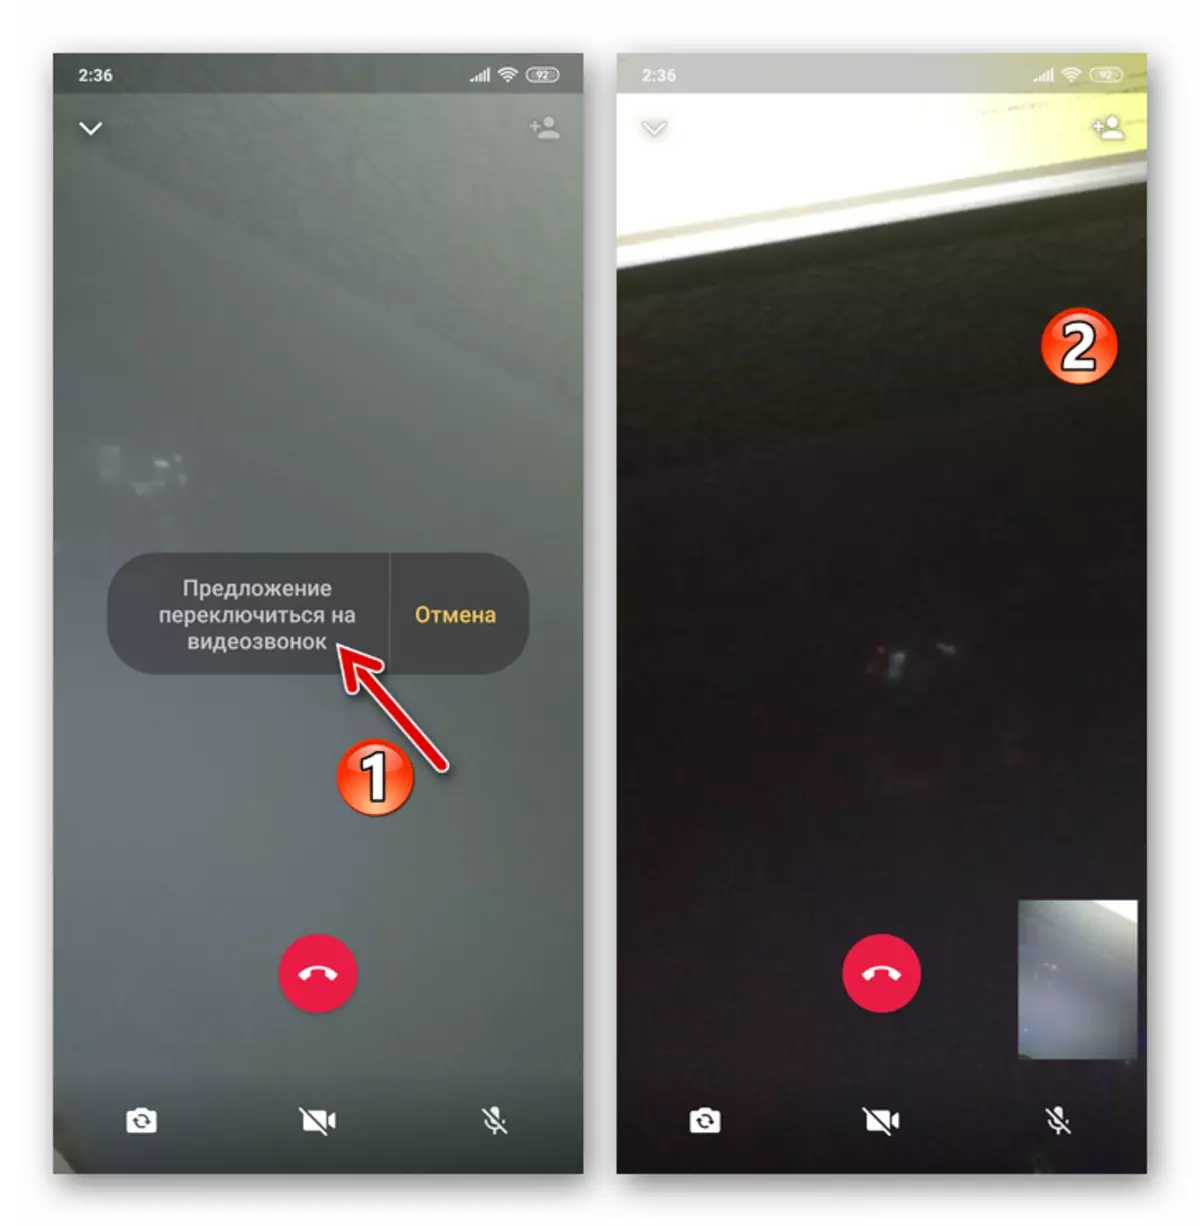 WhatsApp voor Android omschakelen naar videokoppeling in het proces van audiosite